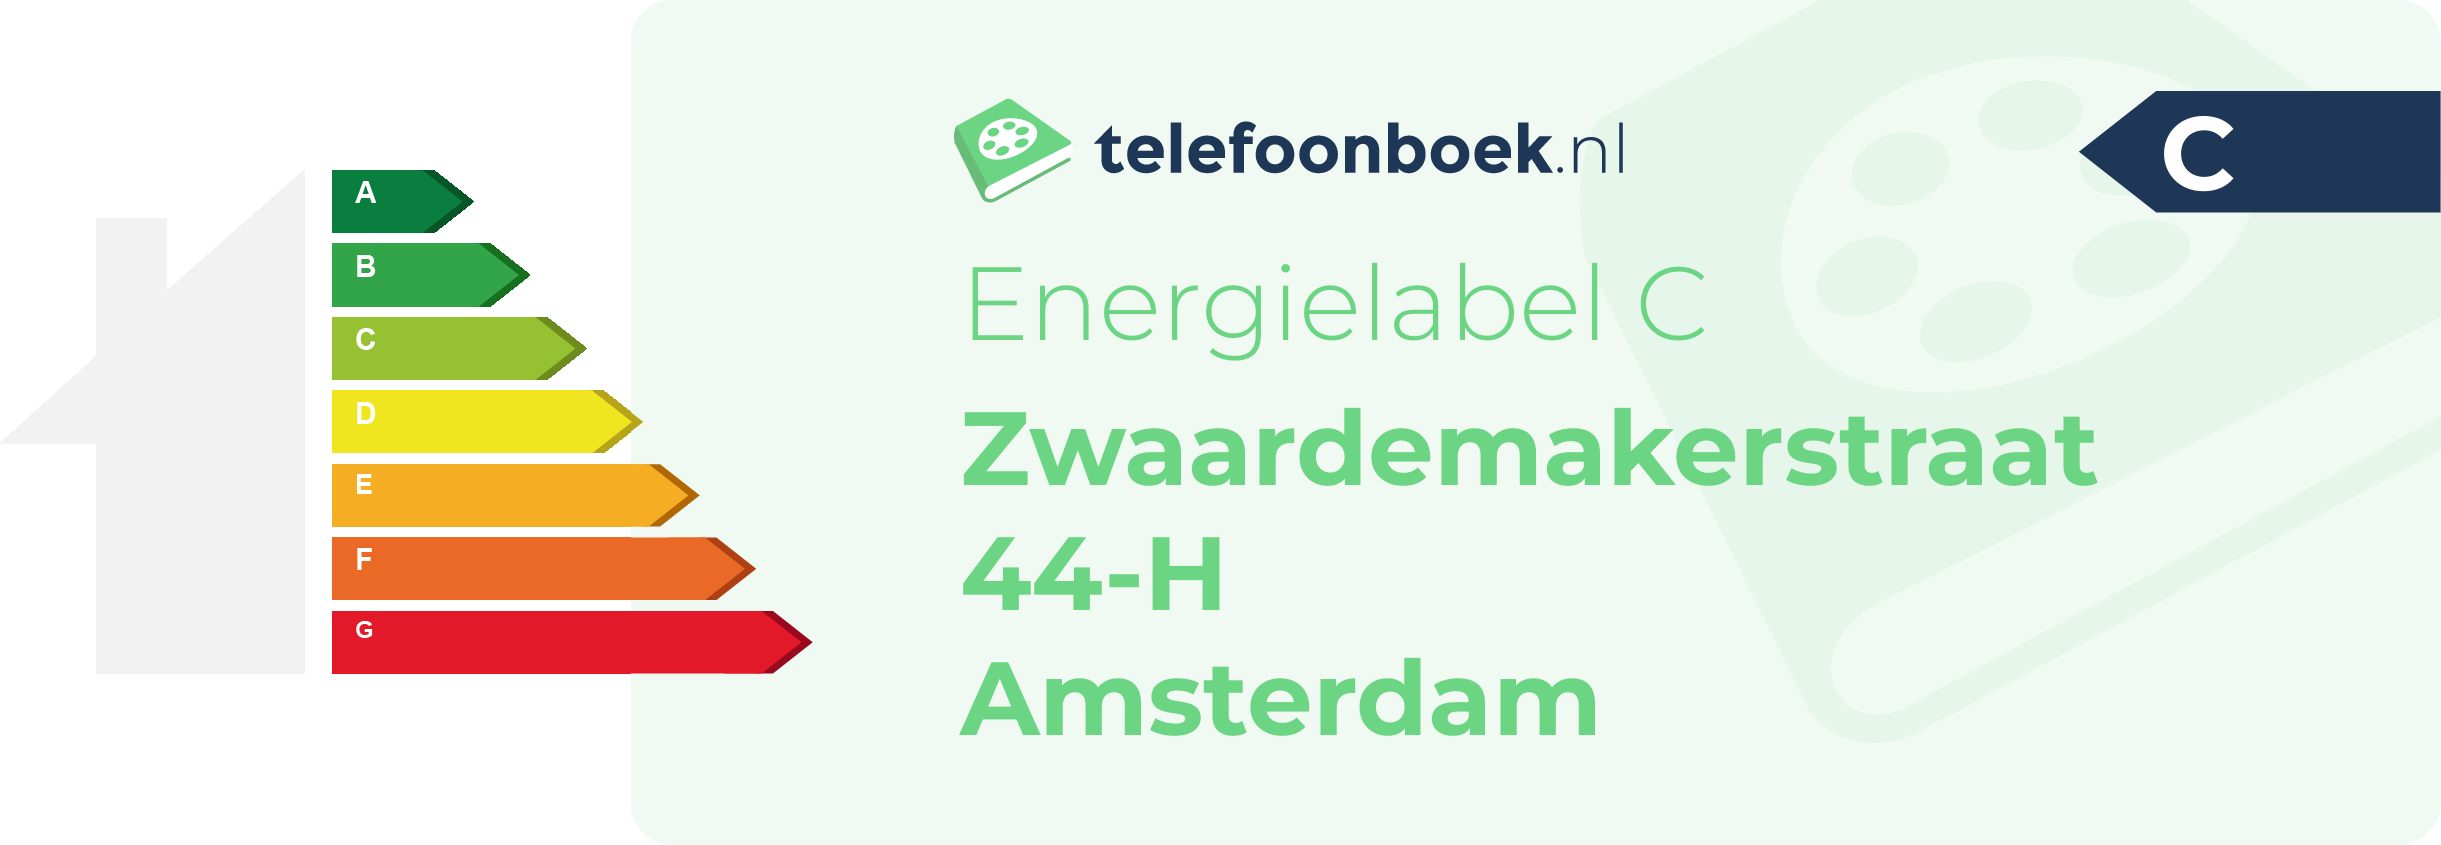 Energielabel Zwaardemakerstraat 44-H Amsterdam